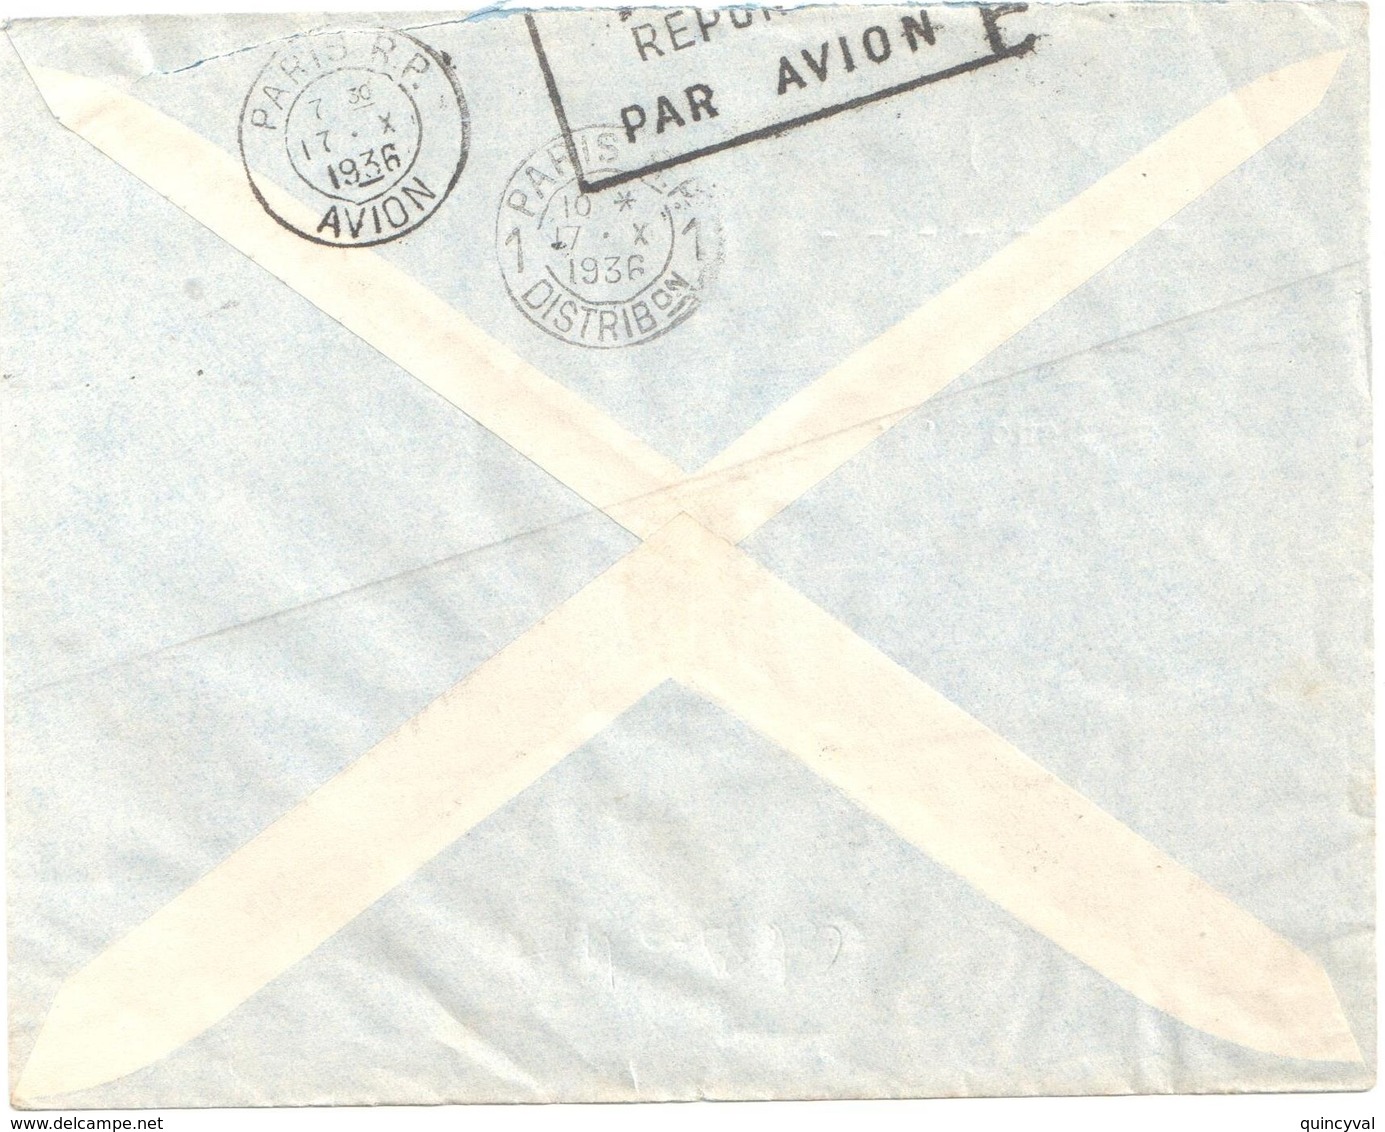 GAO Soudan Français Lettre PAR AVION Ob 10 10 1936 Arrivée Verso 17/10/1936 1,25f Batelier Niger Yv 80 - Covers & Documents